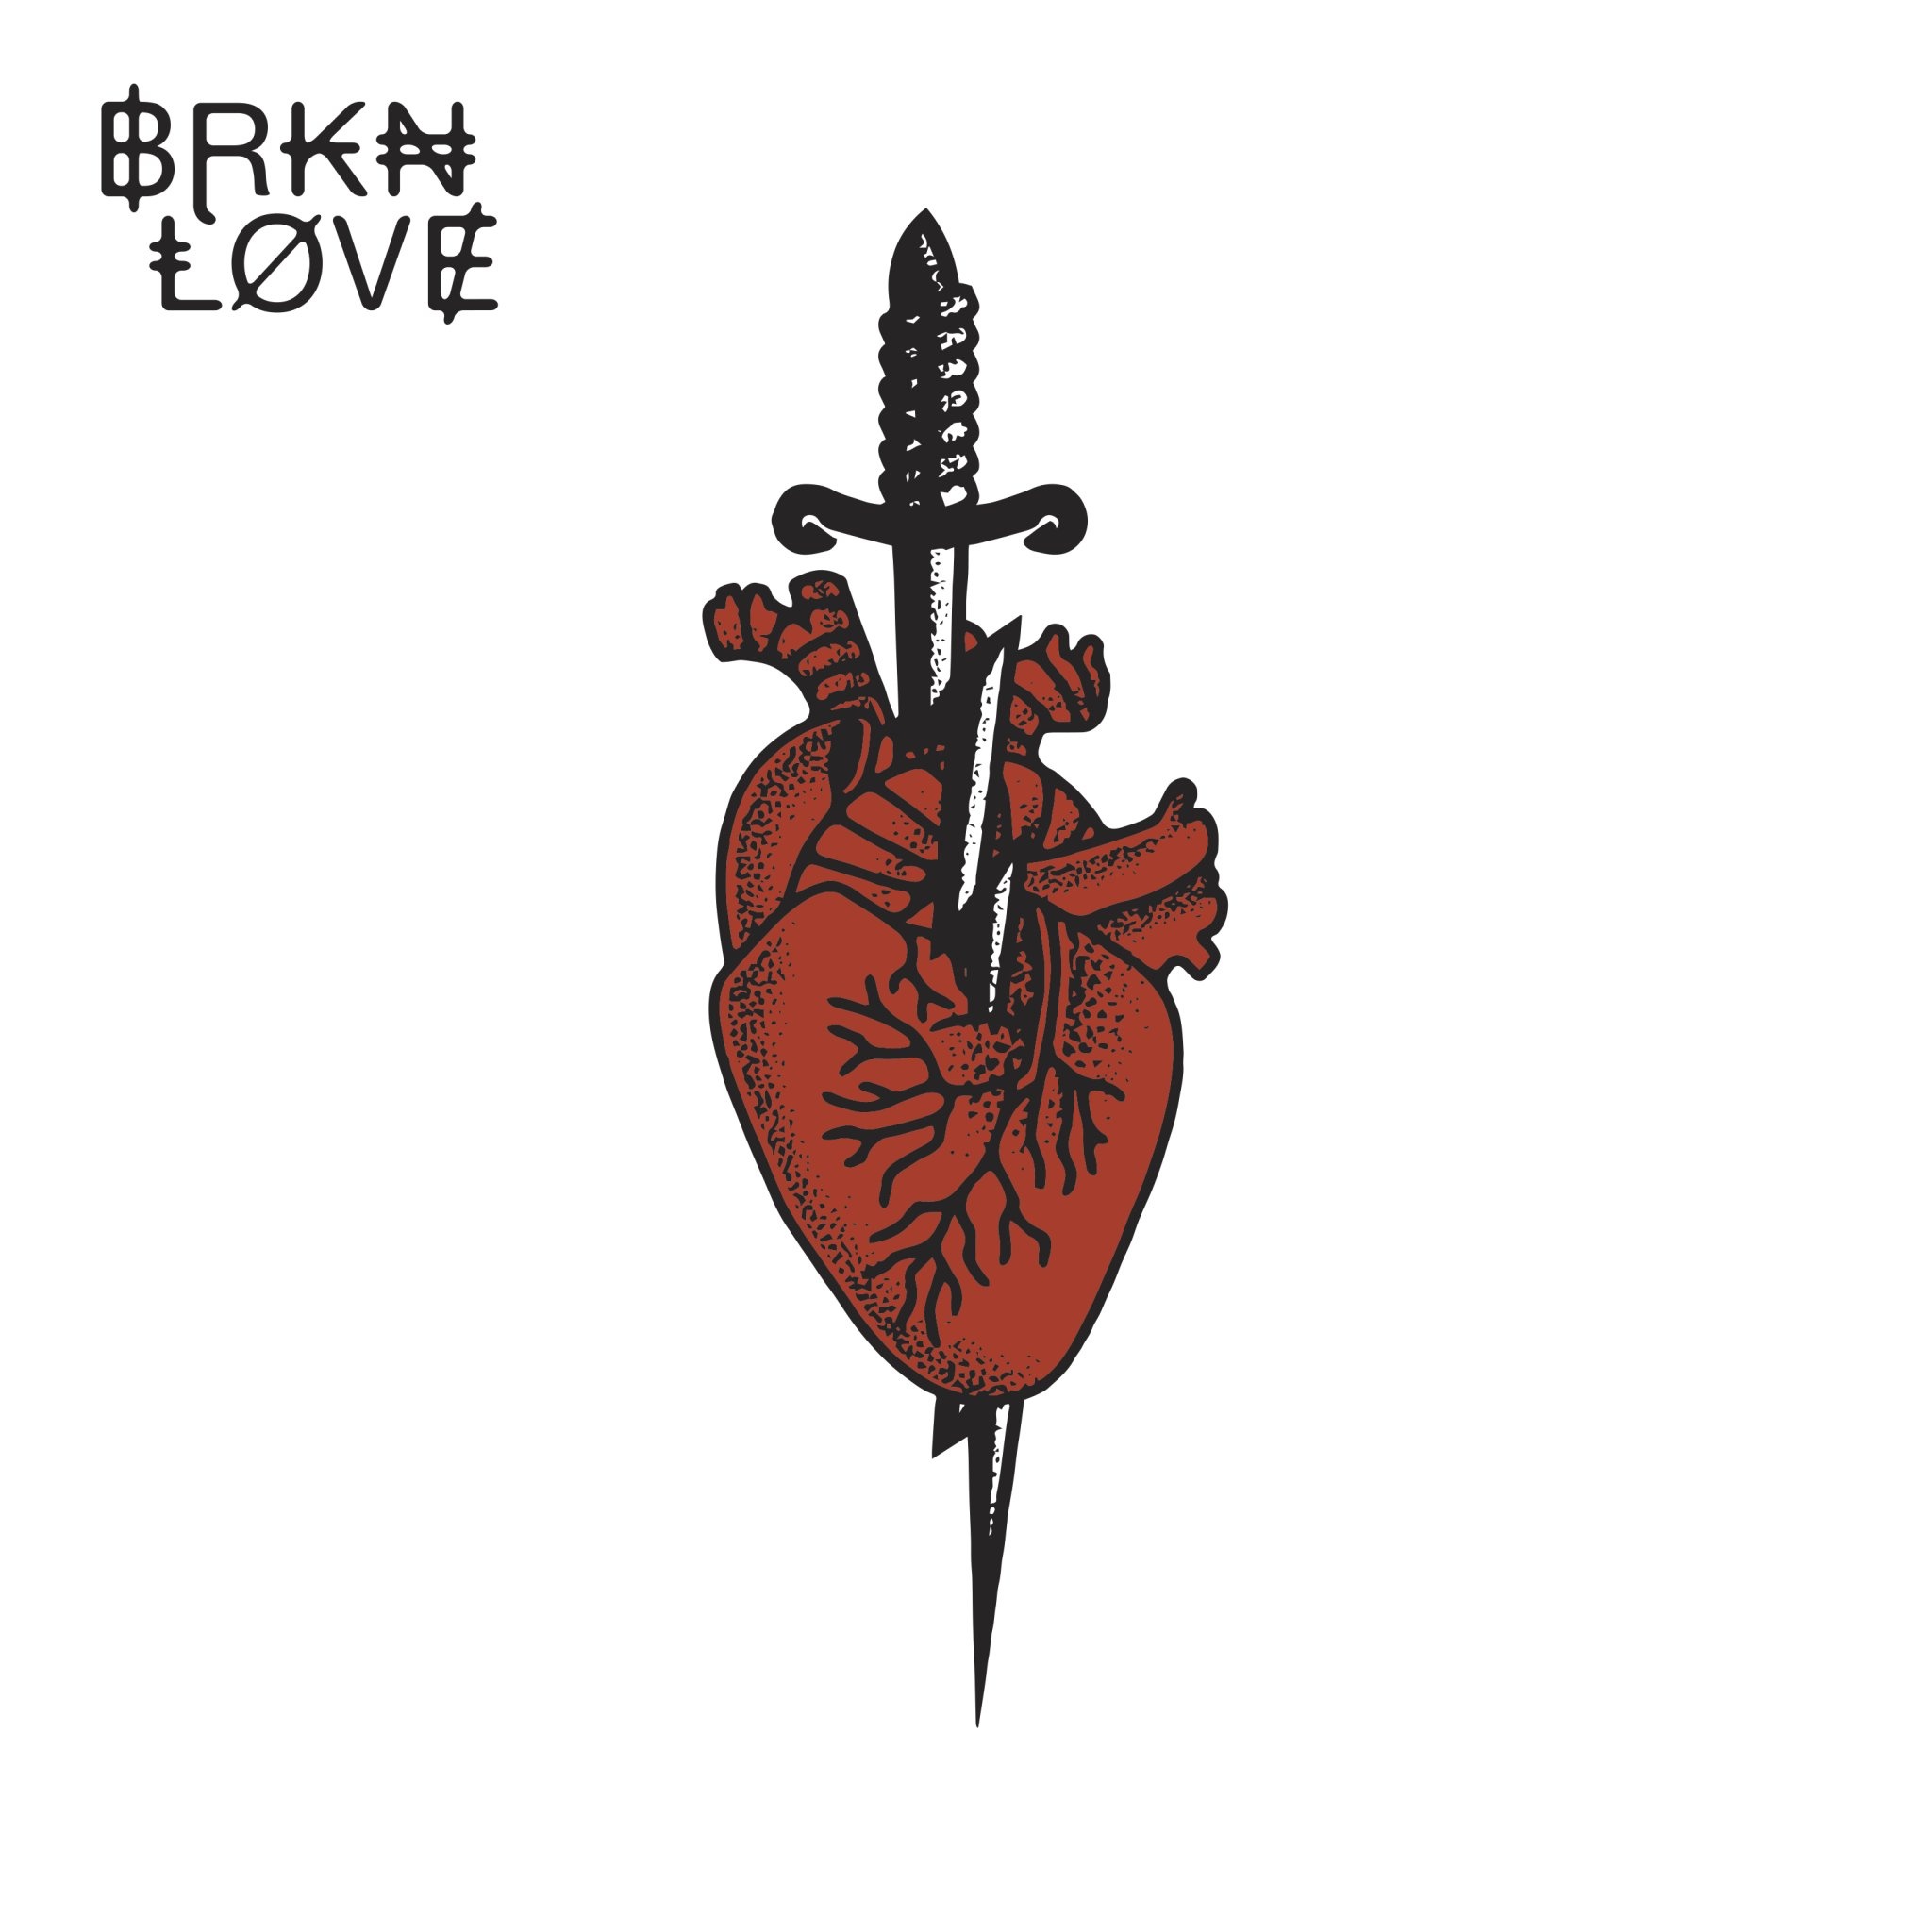 Brkn Love, Papercuts, Last. fm playlist, 2050x2050 HD Phone